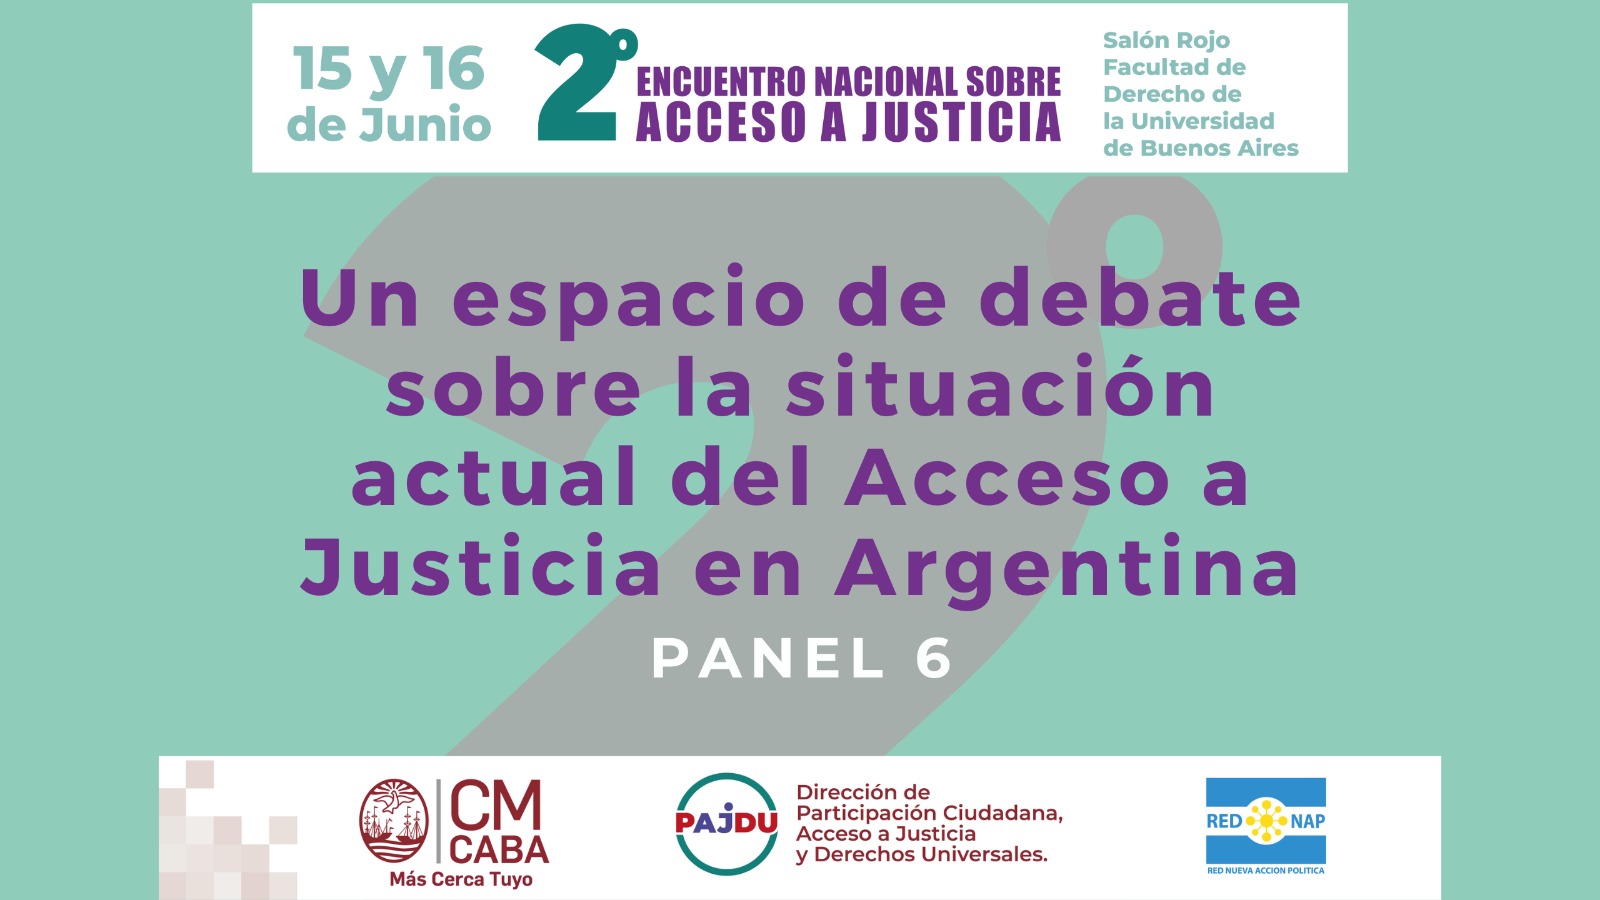 Panel 6: Acceso a Justicia y los tribunales del 2do. Encuentro Nacional sobre Acceso a Justicia en Argentina.